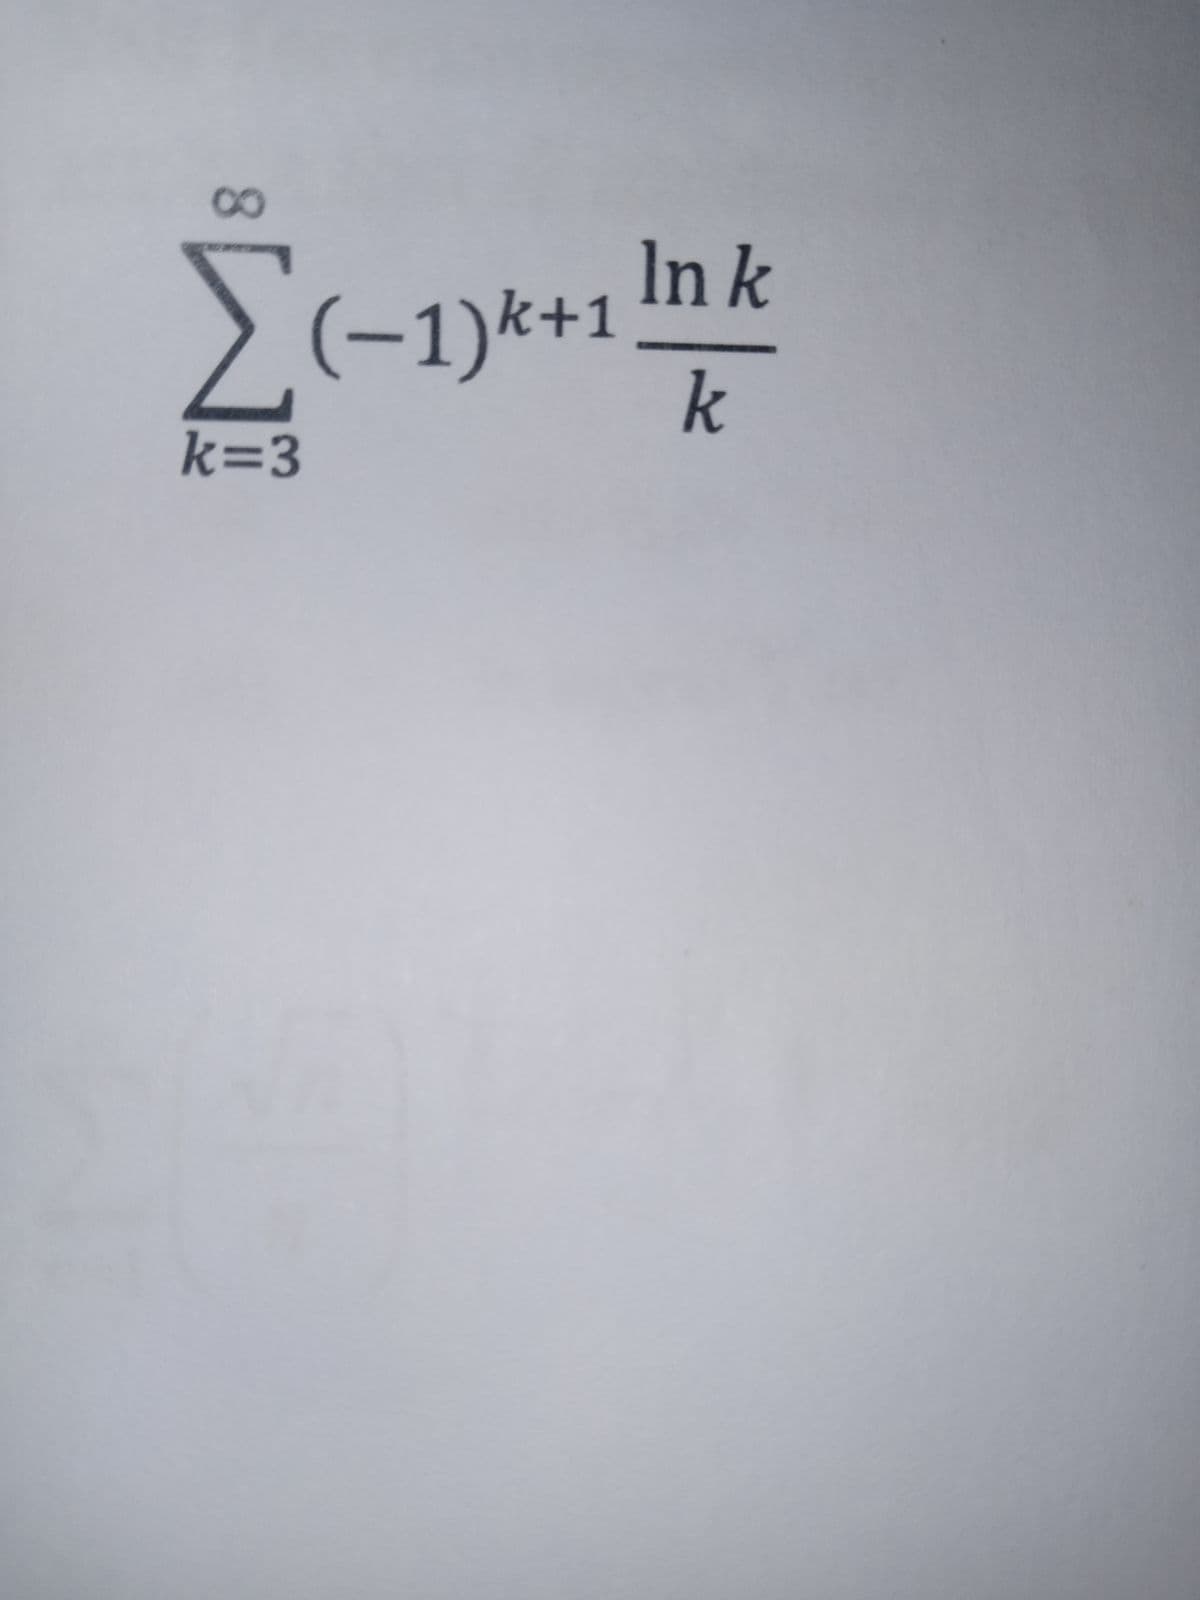 co
k=3
(−1)k+1
+1 Ink
k